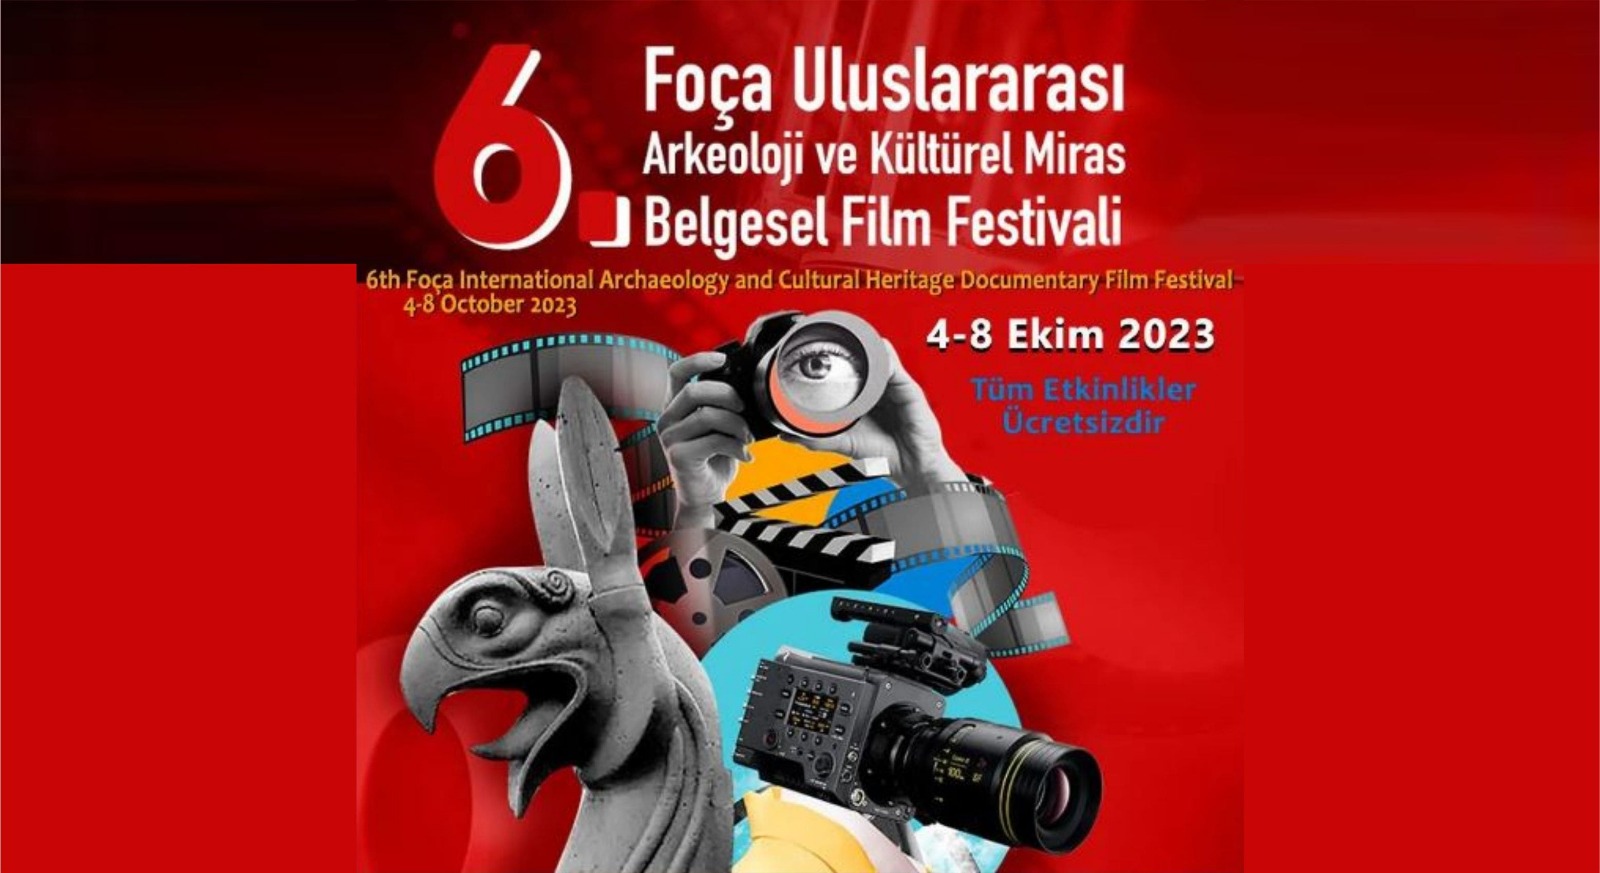 foca-uluslararasi-arkeoloji-ve-kulturel-miras-belgesel-film-festivali-3014